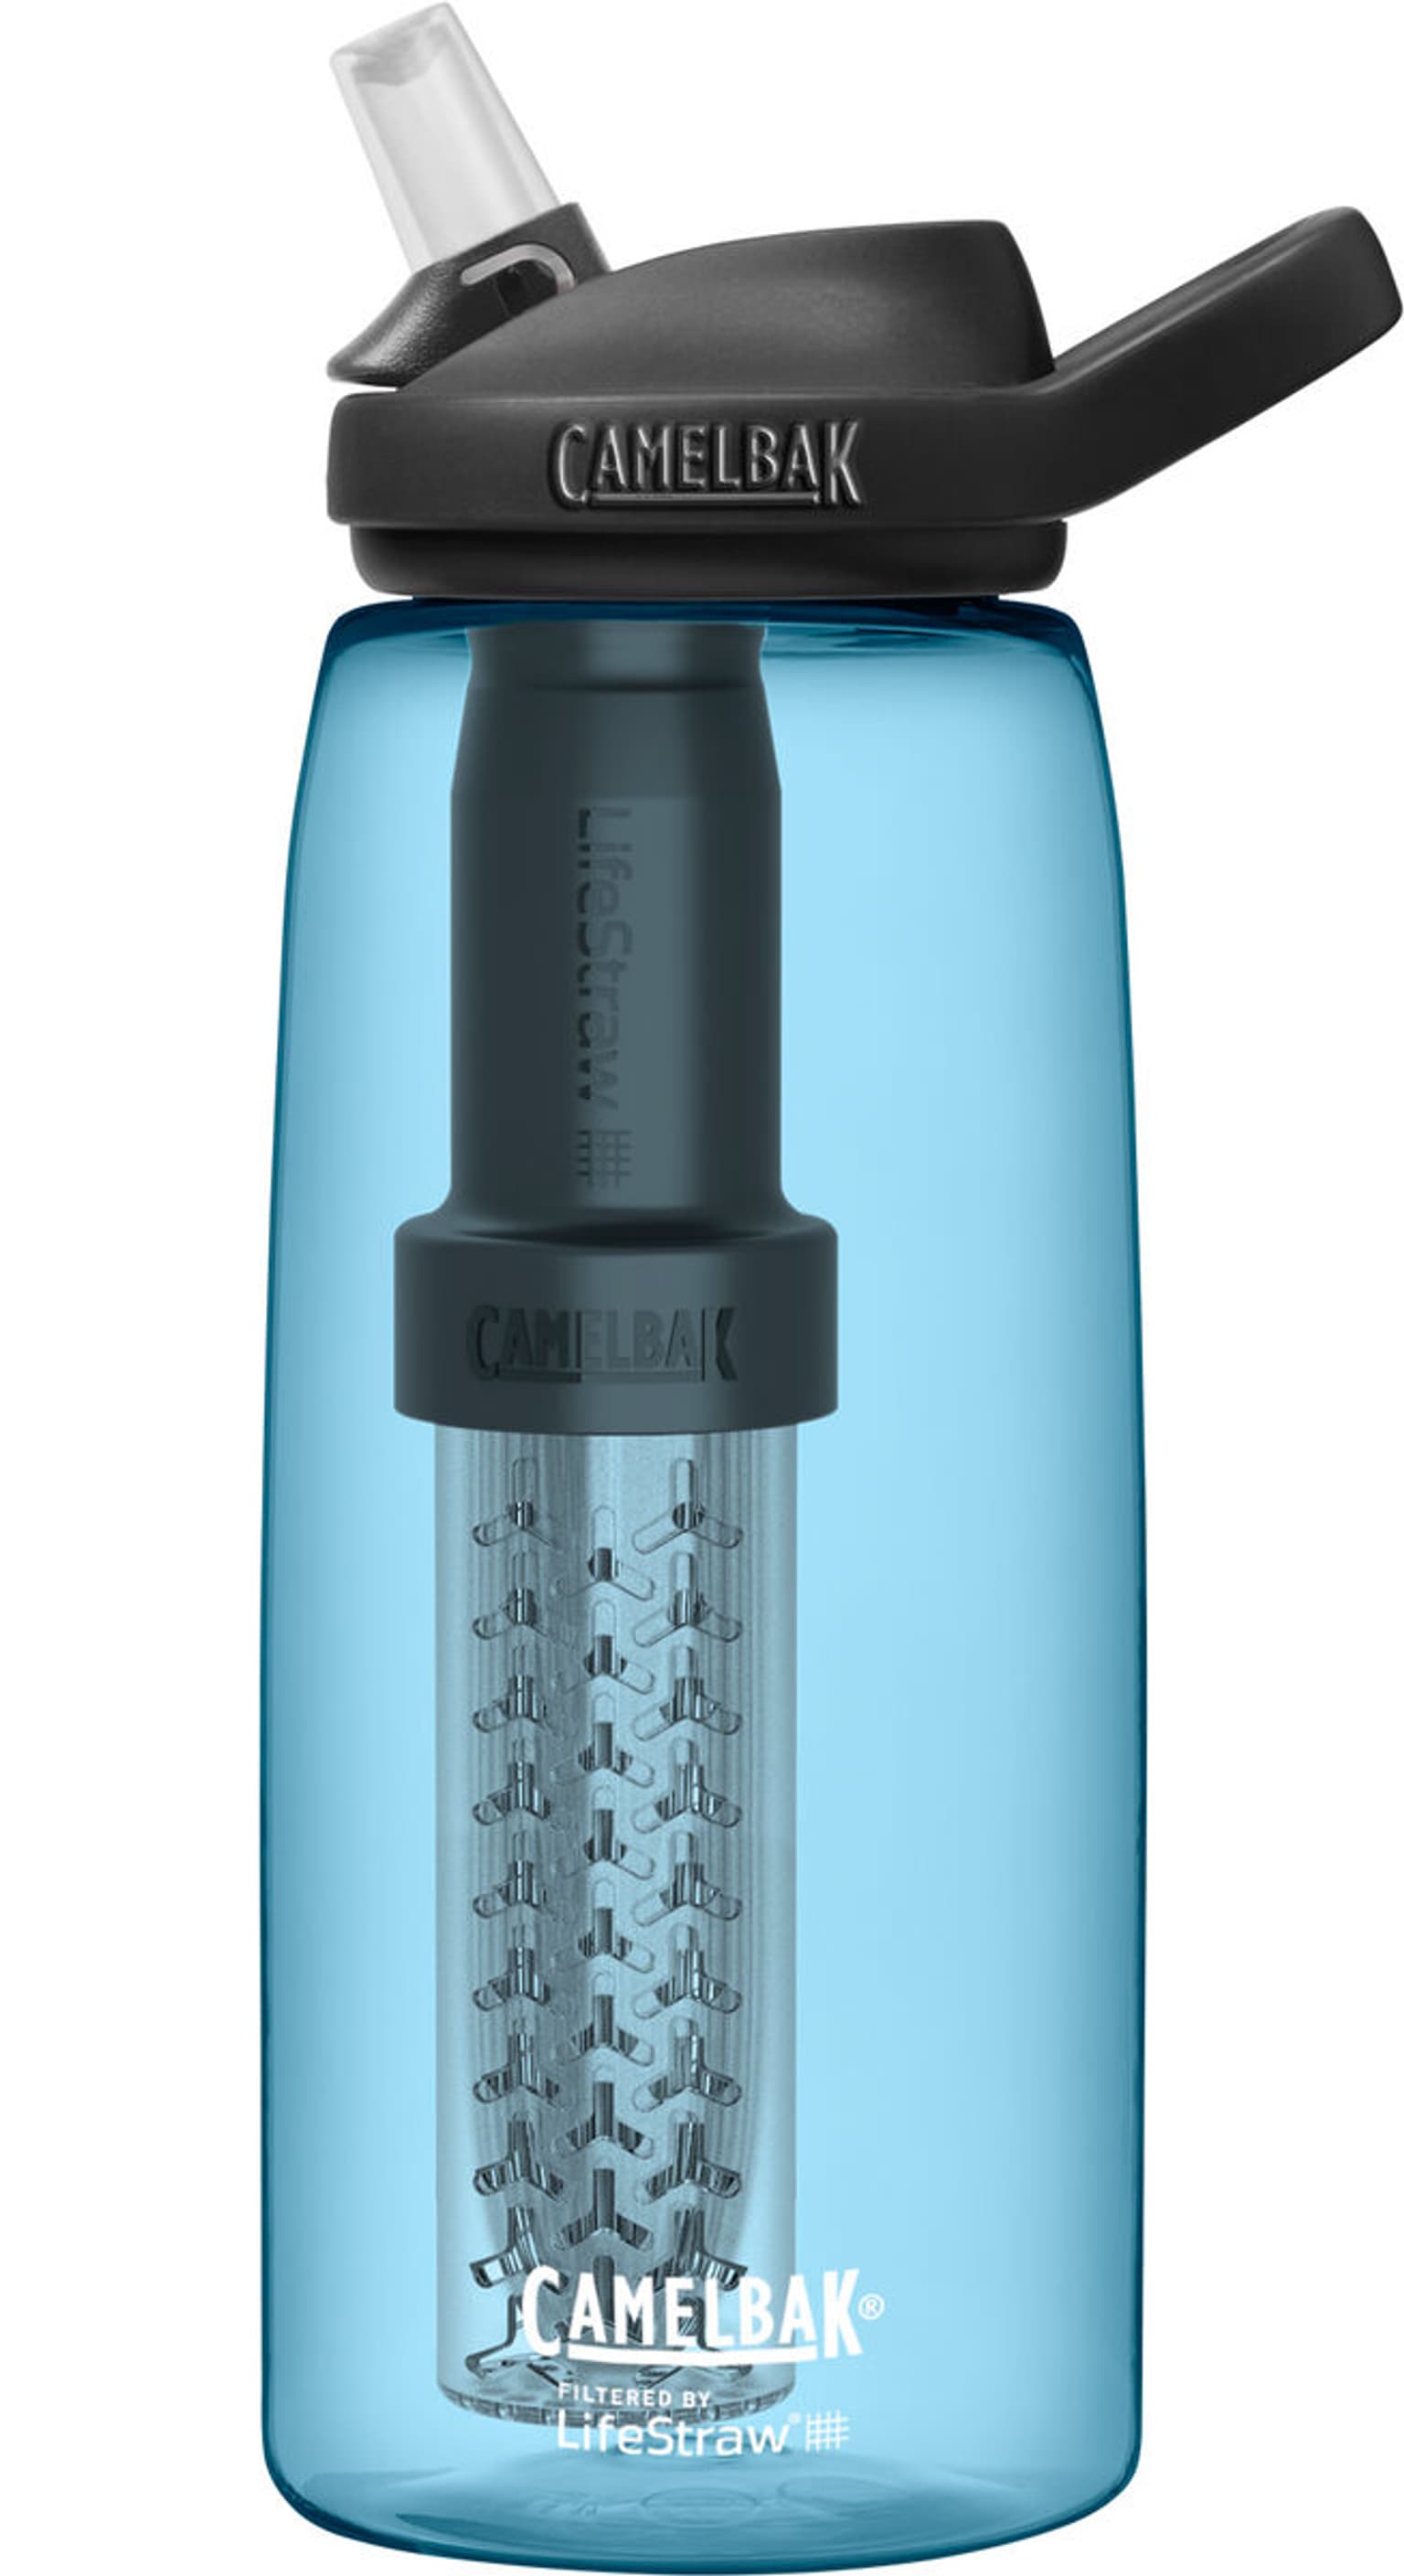 Camelbak Camelbak Eddy+ Bottle Lifestraw 1.0l Wasserfilter bleu 1